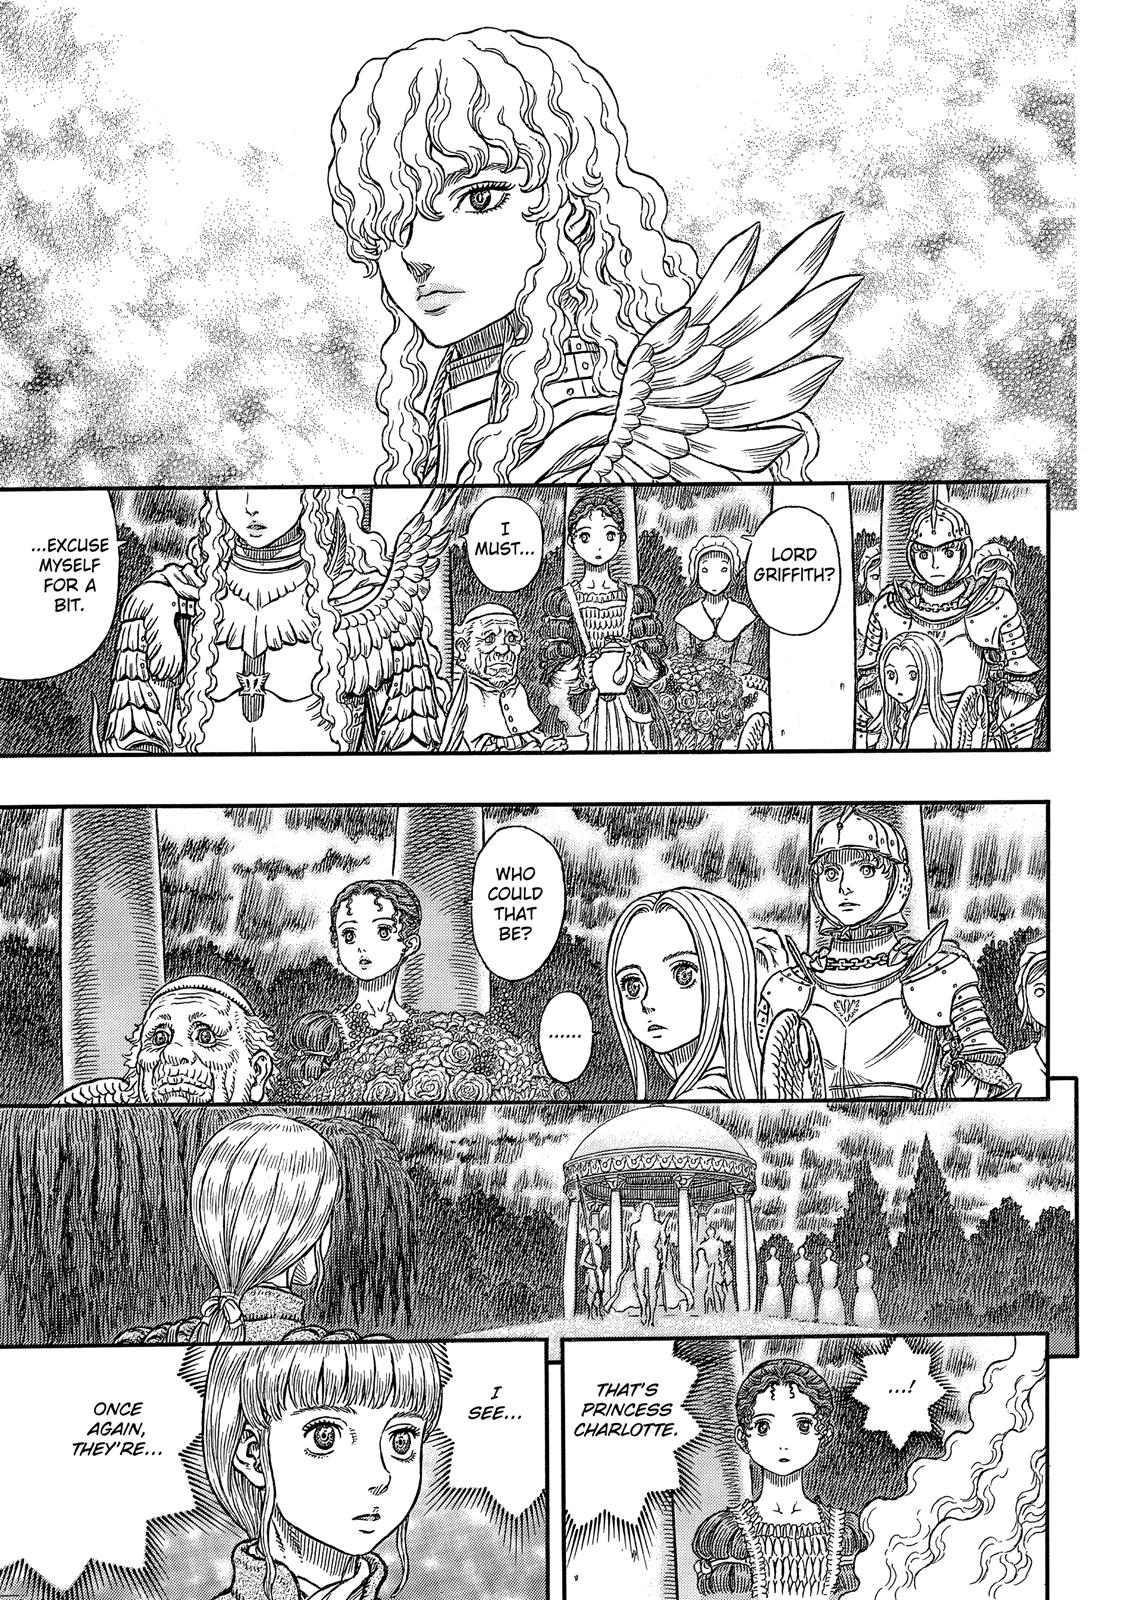 Berserk Manga Chapter 337 image 09